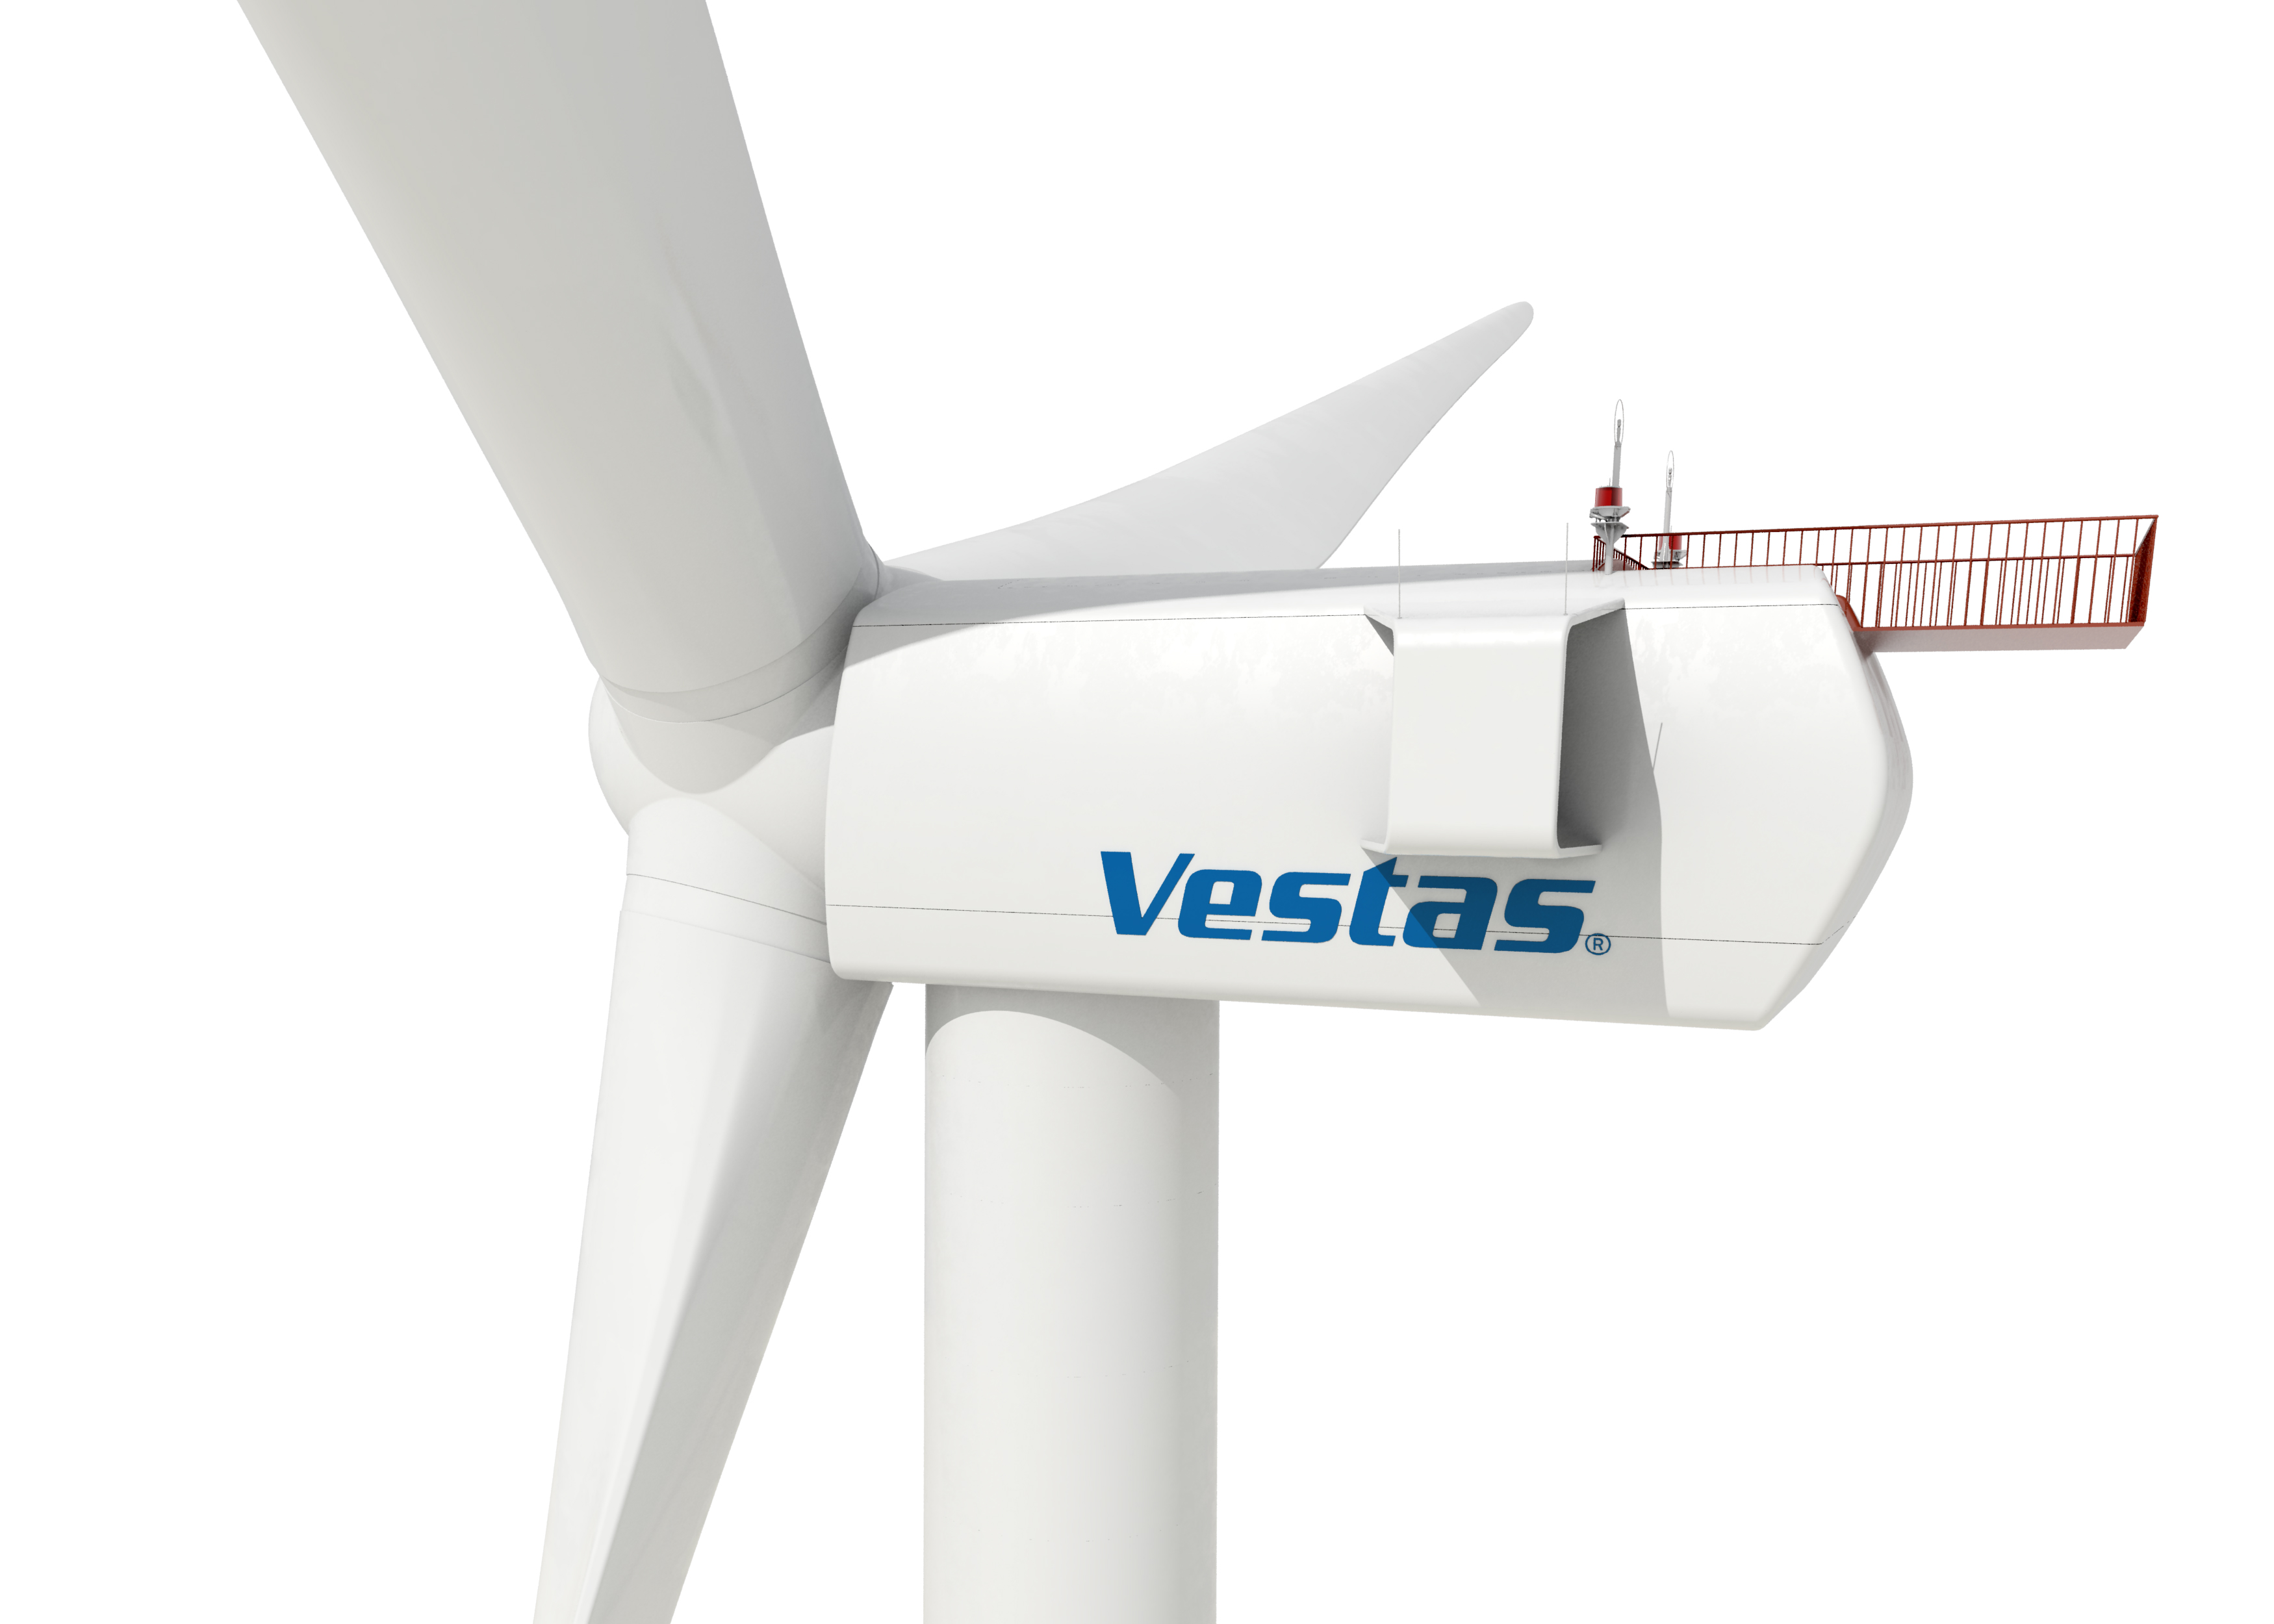 Eólica y energías renovables: Vestas producirá aerogeneradores de 8 MW para parques eólicos marinos